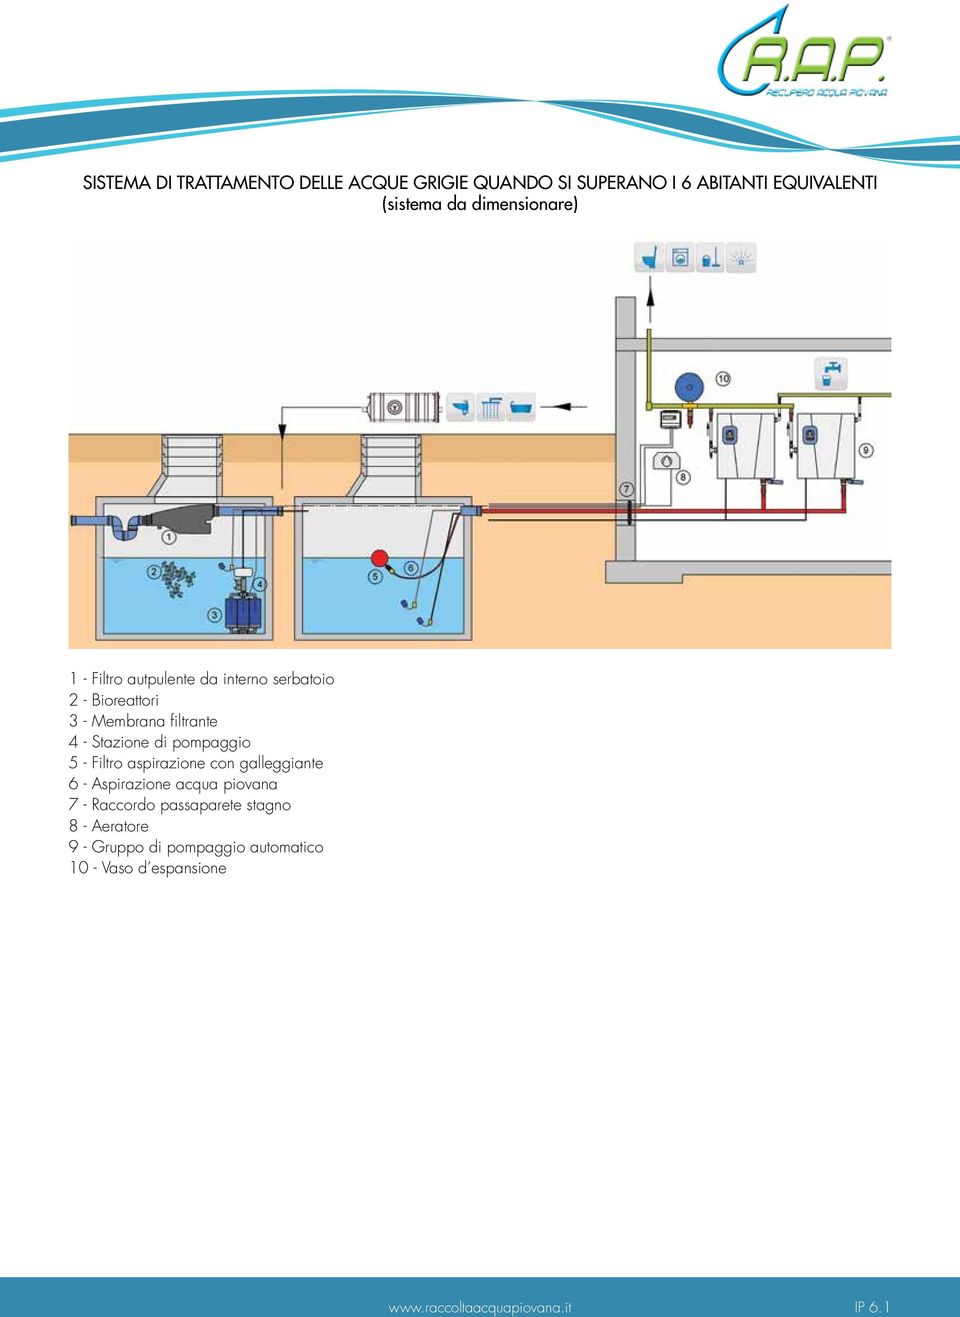 Stazione di pompaggio 5 - Filtro aspirazione con galleggiante 6 - Aspirazione acqua piovana 7 -